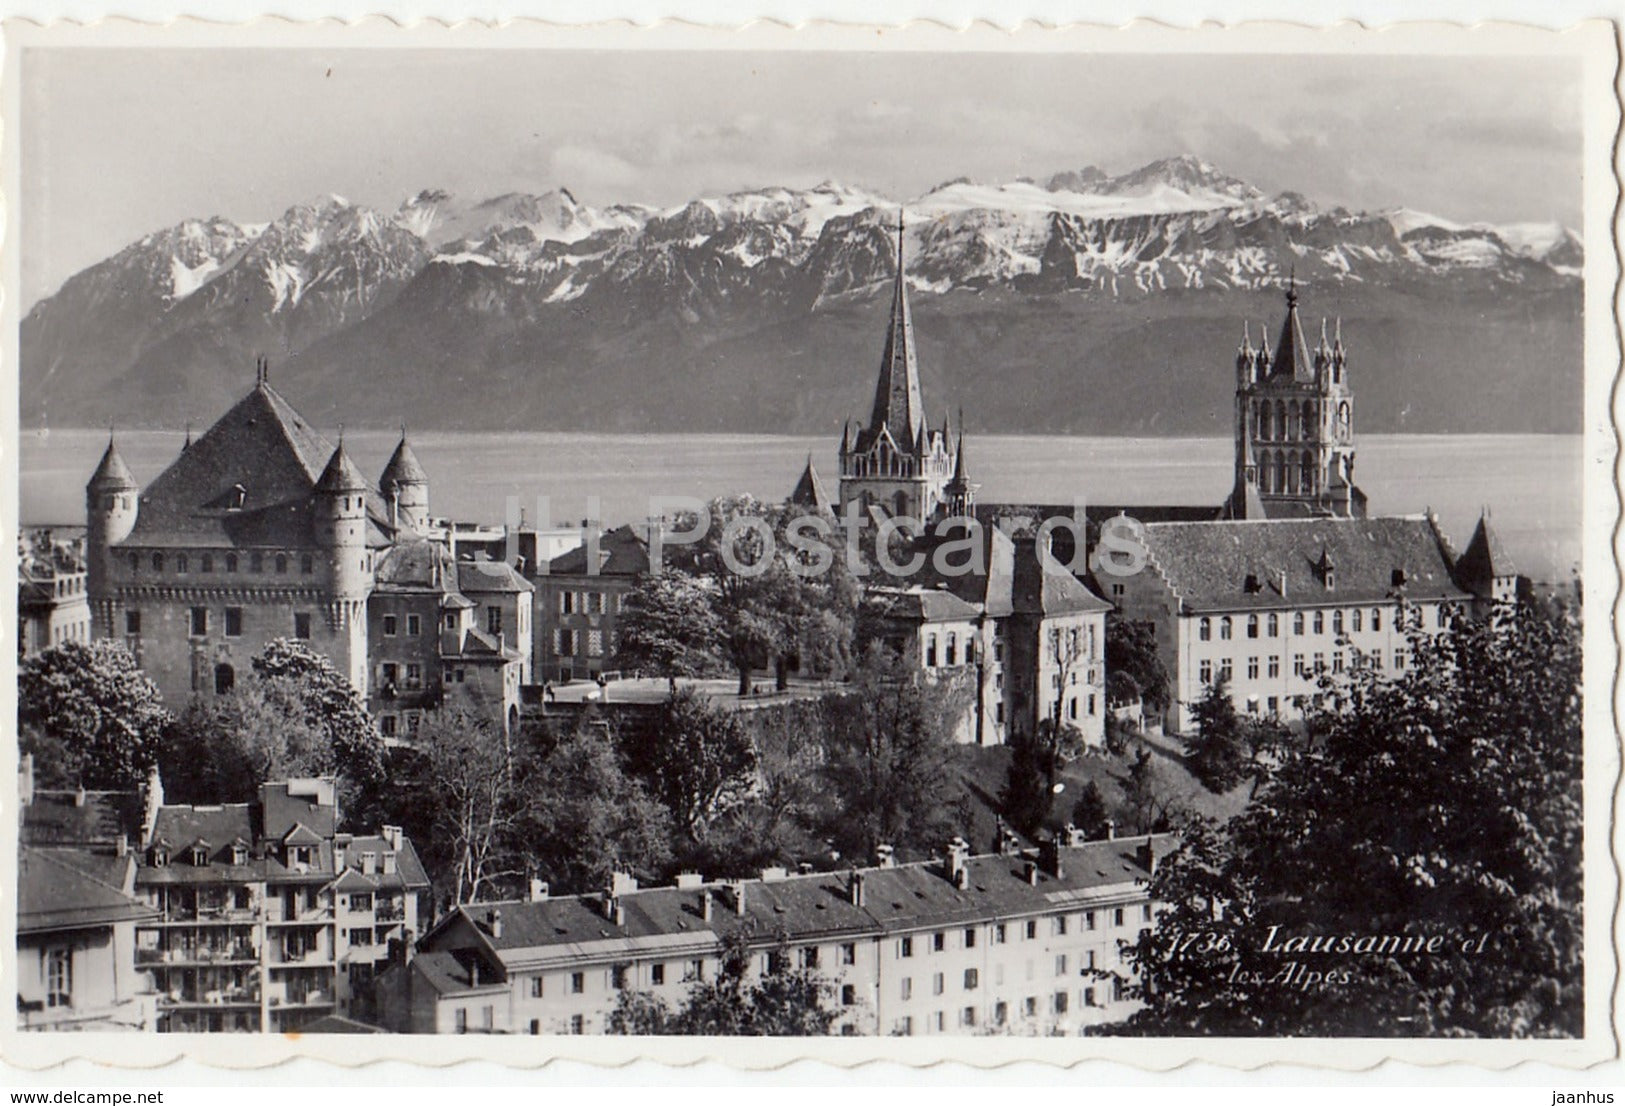 Lausanne et les Alpes - 1736 - Switzerland - 1943 - used - JH Postcards